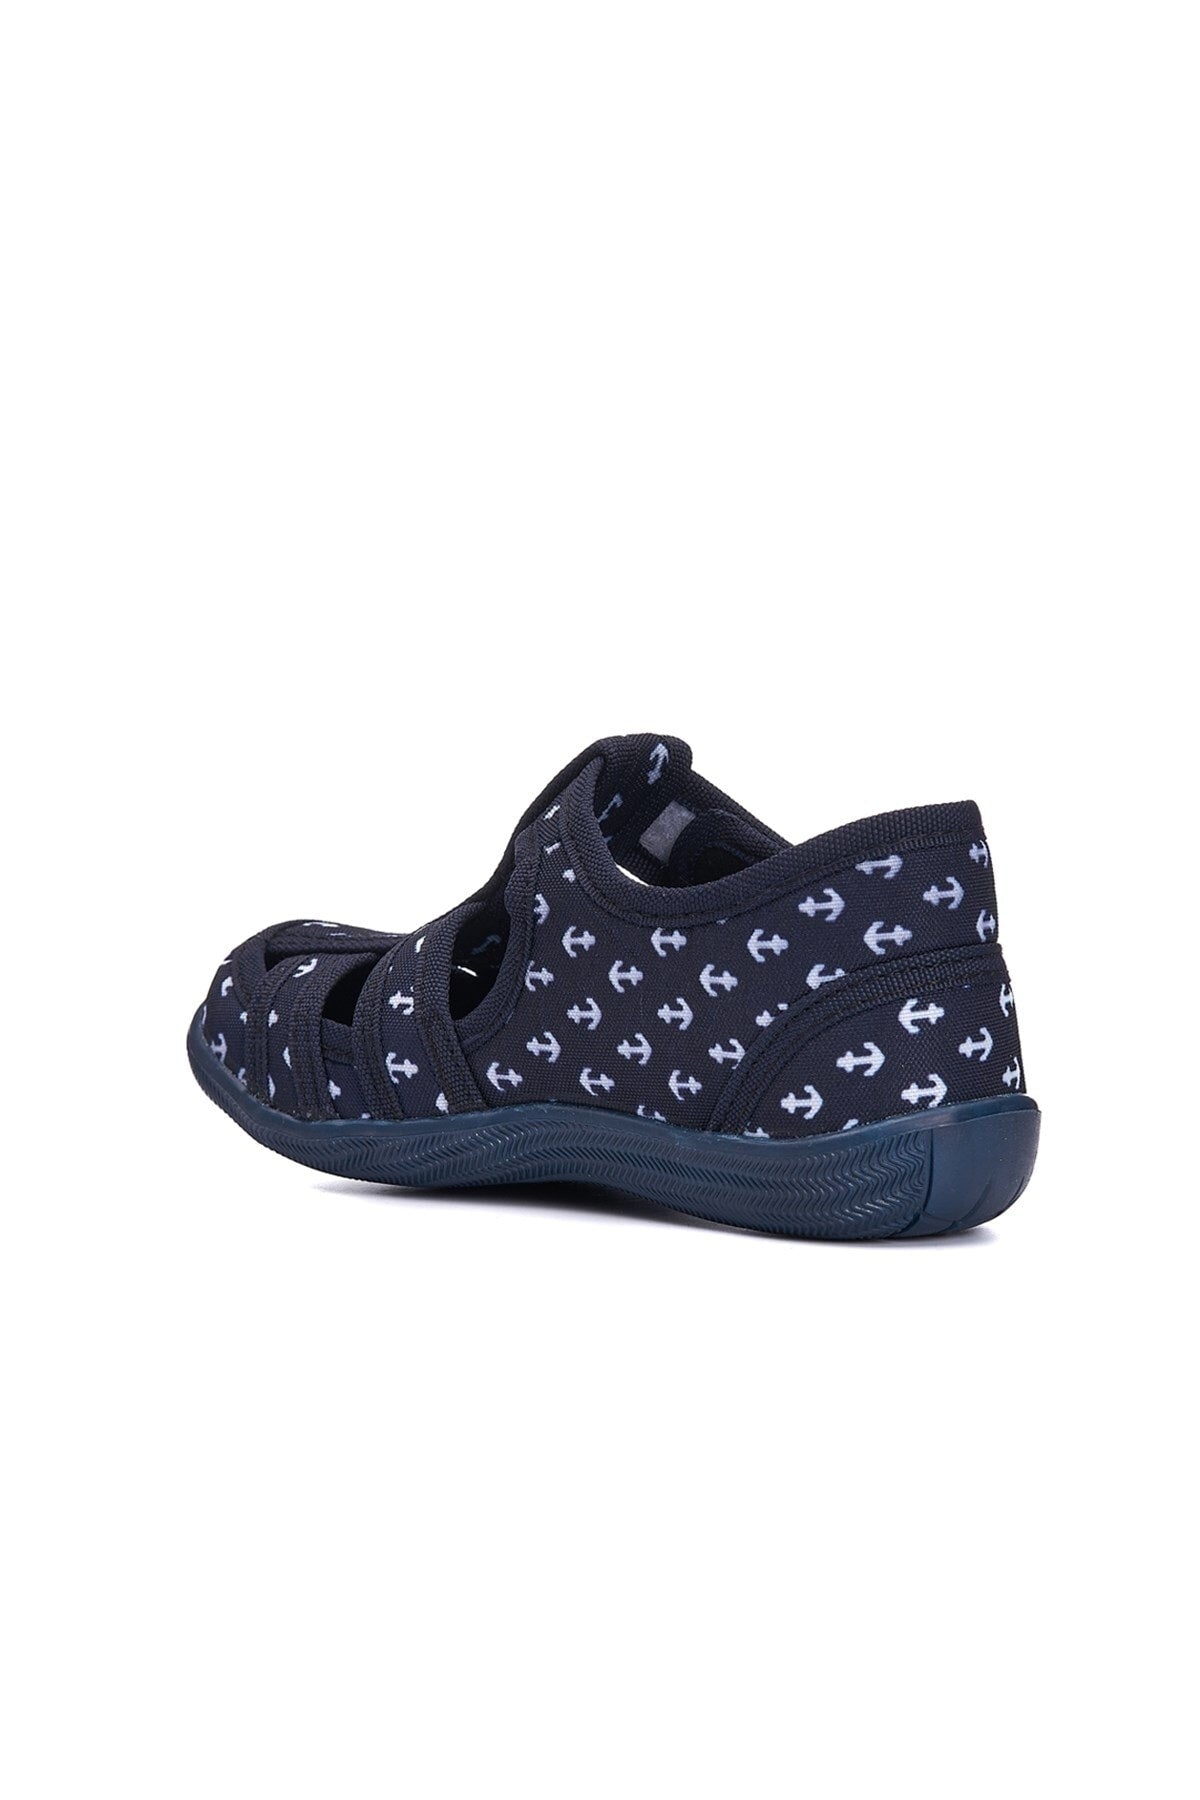 Daily Unisex Children Sandals Flexible Slip No Summer Linen Call Summer House School Nursery Shoes 143